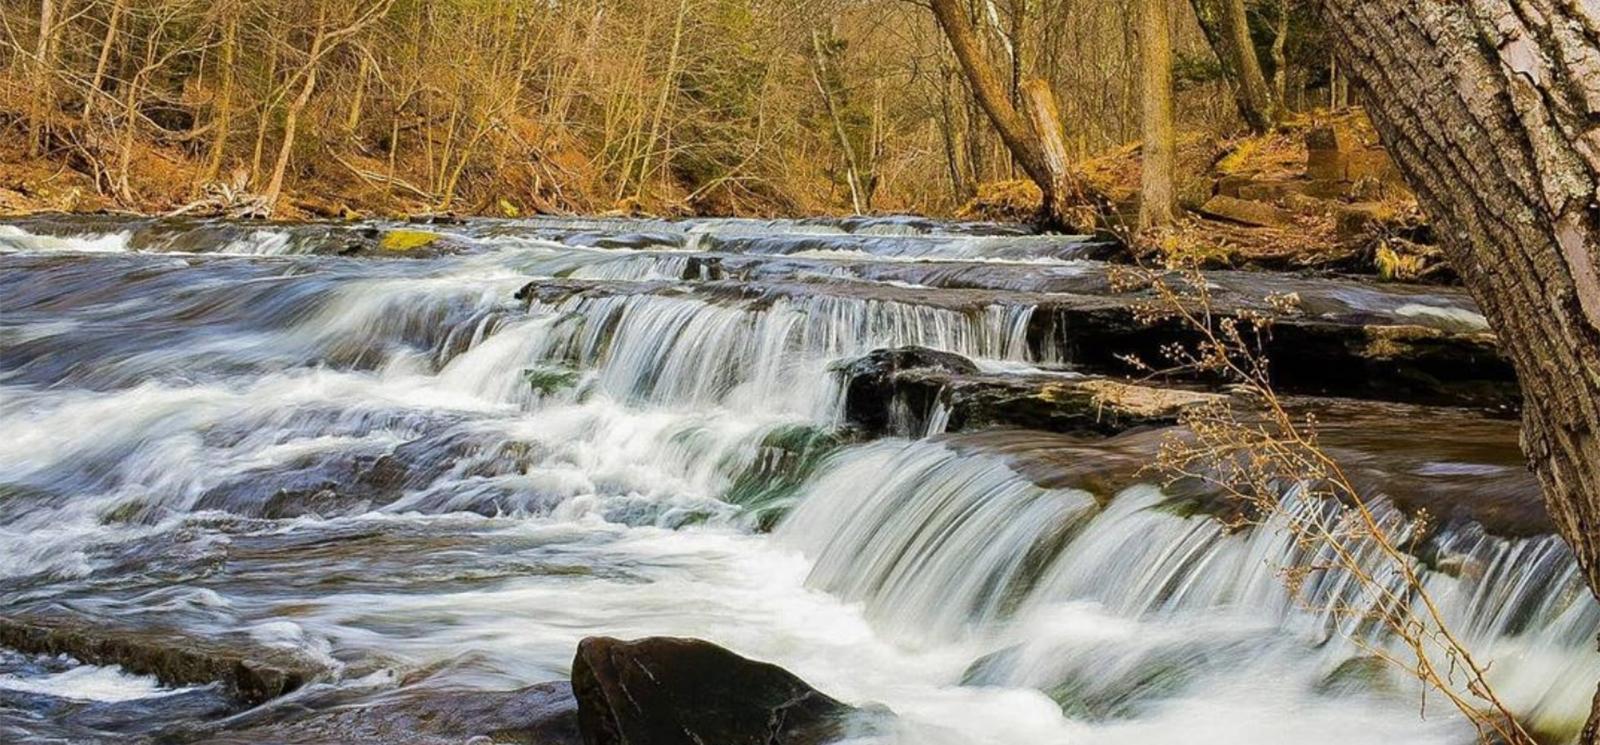 Agua cayendo sobre rocas en el río (Instagram@jones.tittarelliphotography)